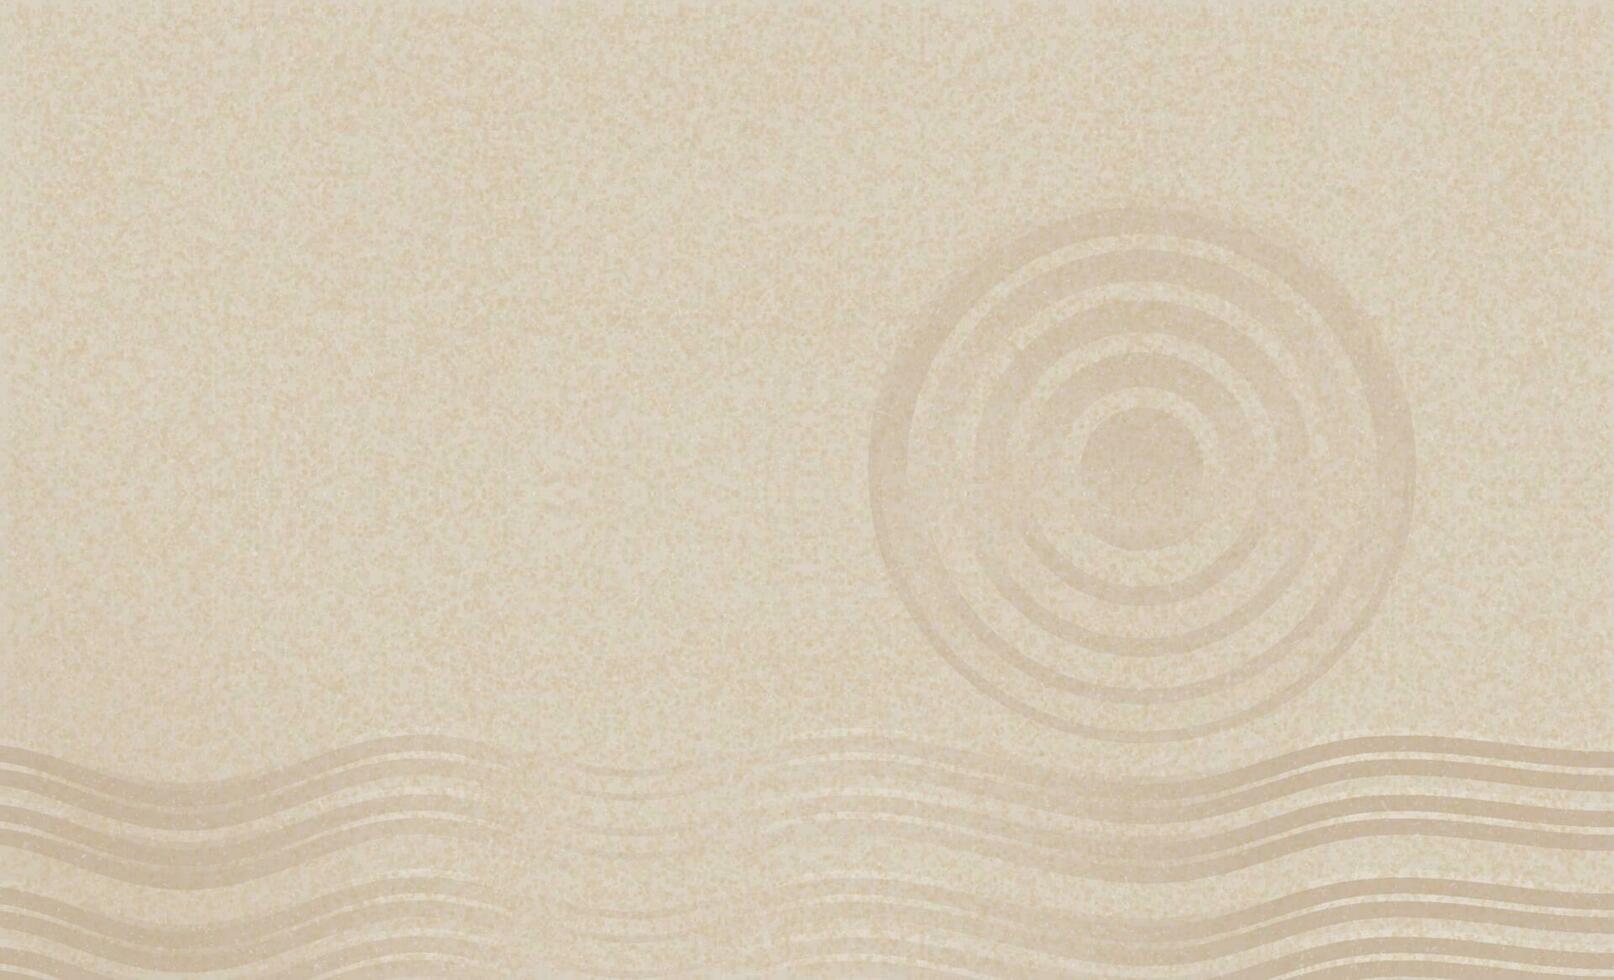 arena playa textura con sencillo espiritual patrones en japonés zen jardín con concéntrico círculos y paralelo líneas rastrillado en suave arenoso superficie fondo,armonía,meditación,zen me gusta concepto vector